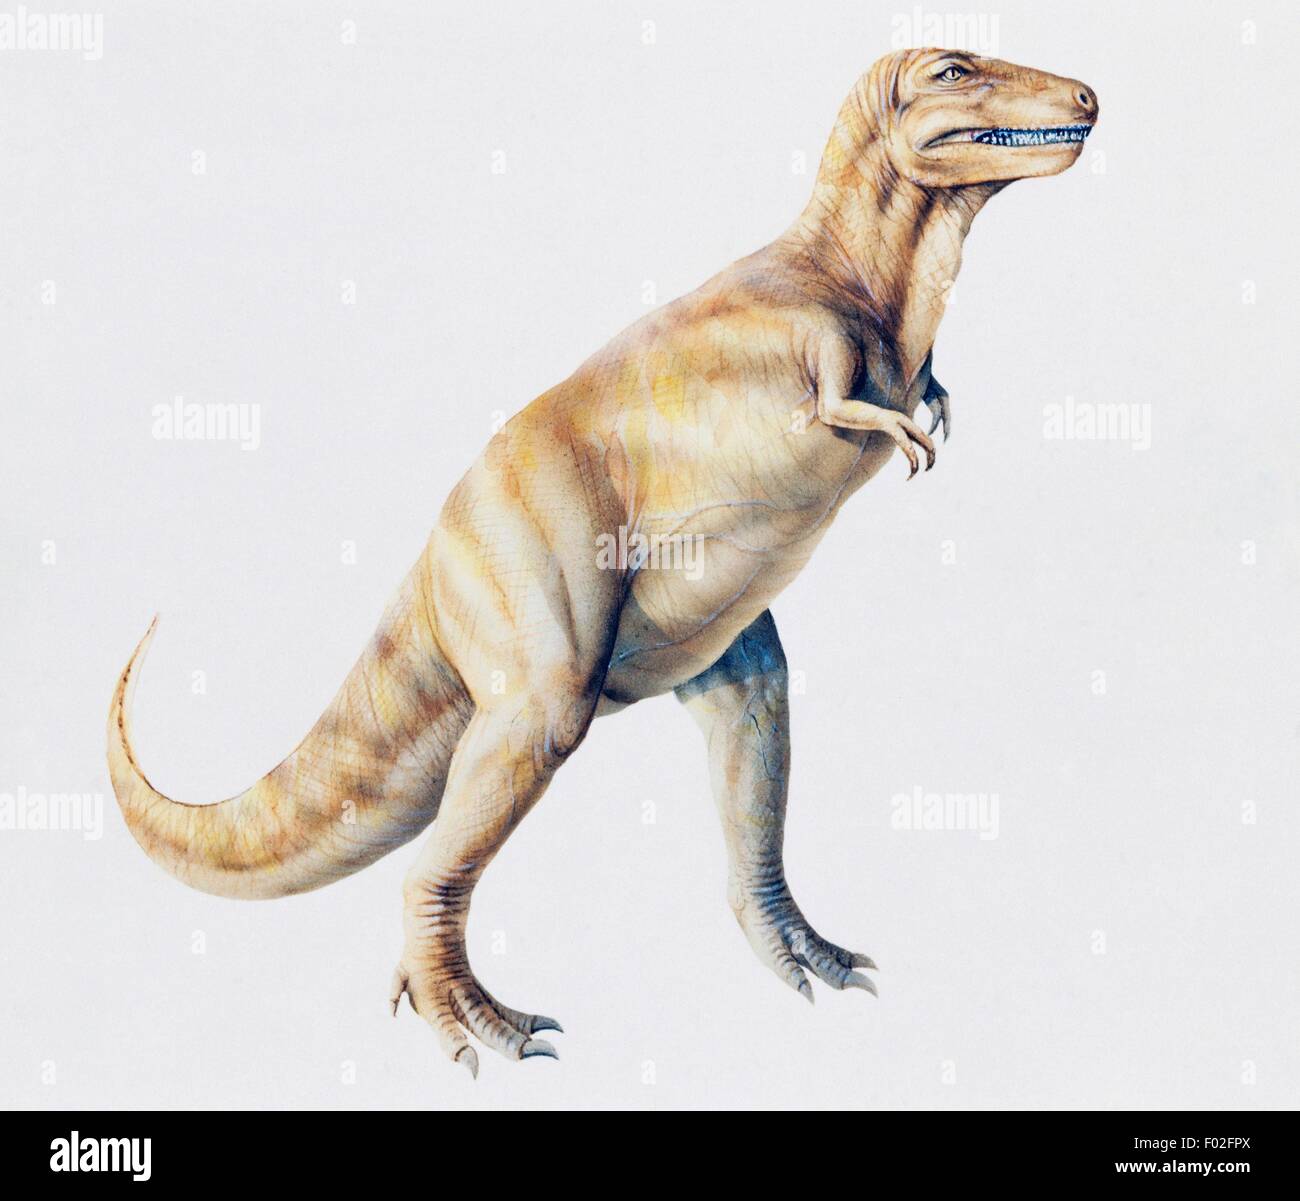 Albertosaurus sarcophagus, Tyrannosauridae, Cretaceous. Illustration. Stock Photo